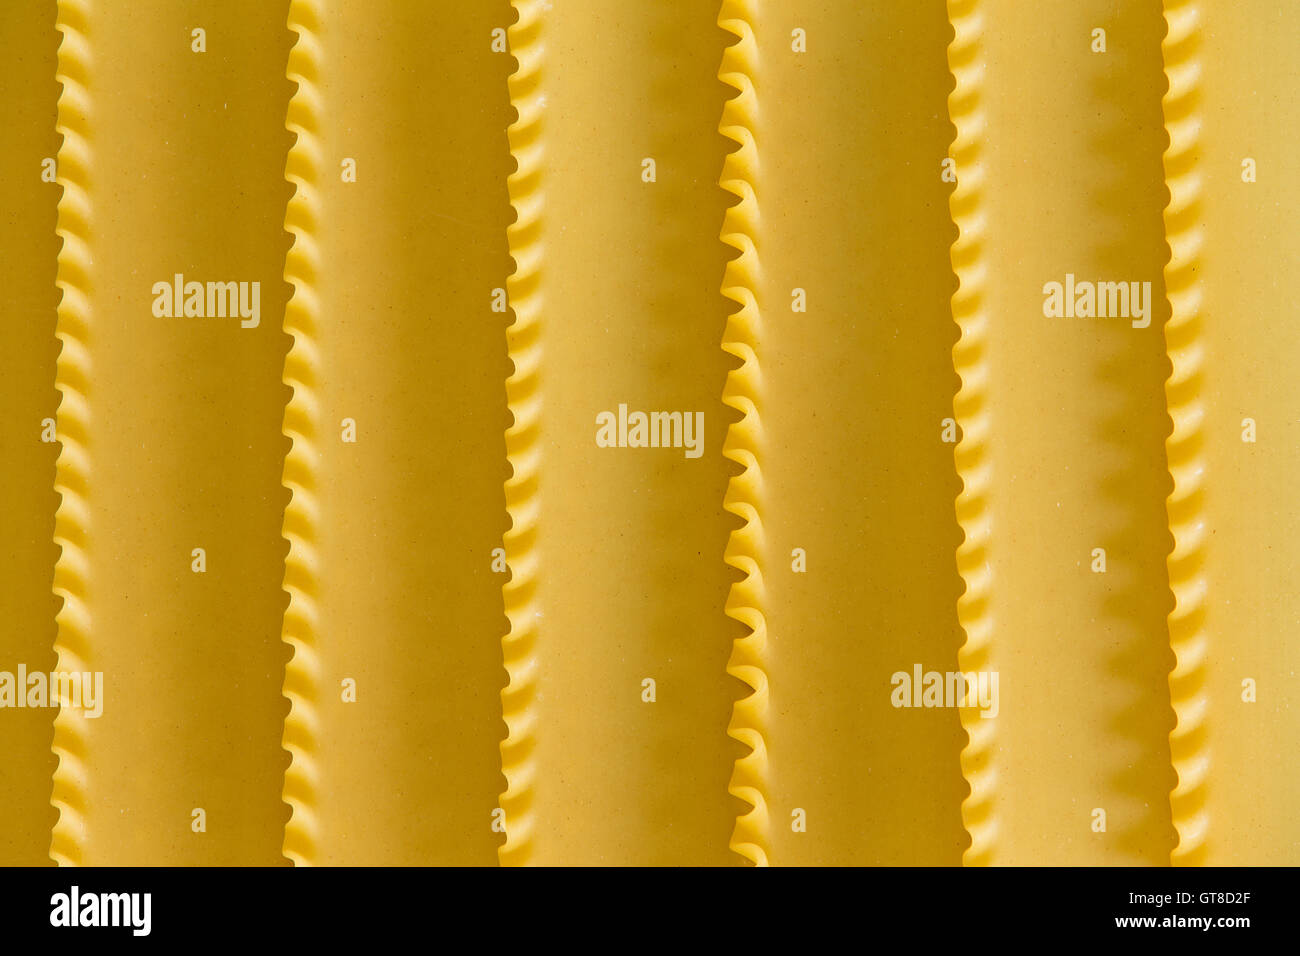 Semoule de blé dur séchée bio texture de fond lasagne avec une parallèle formé par les bords de serti Banque D'Images